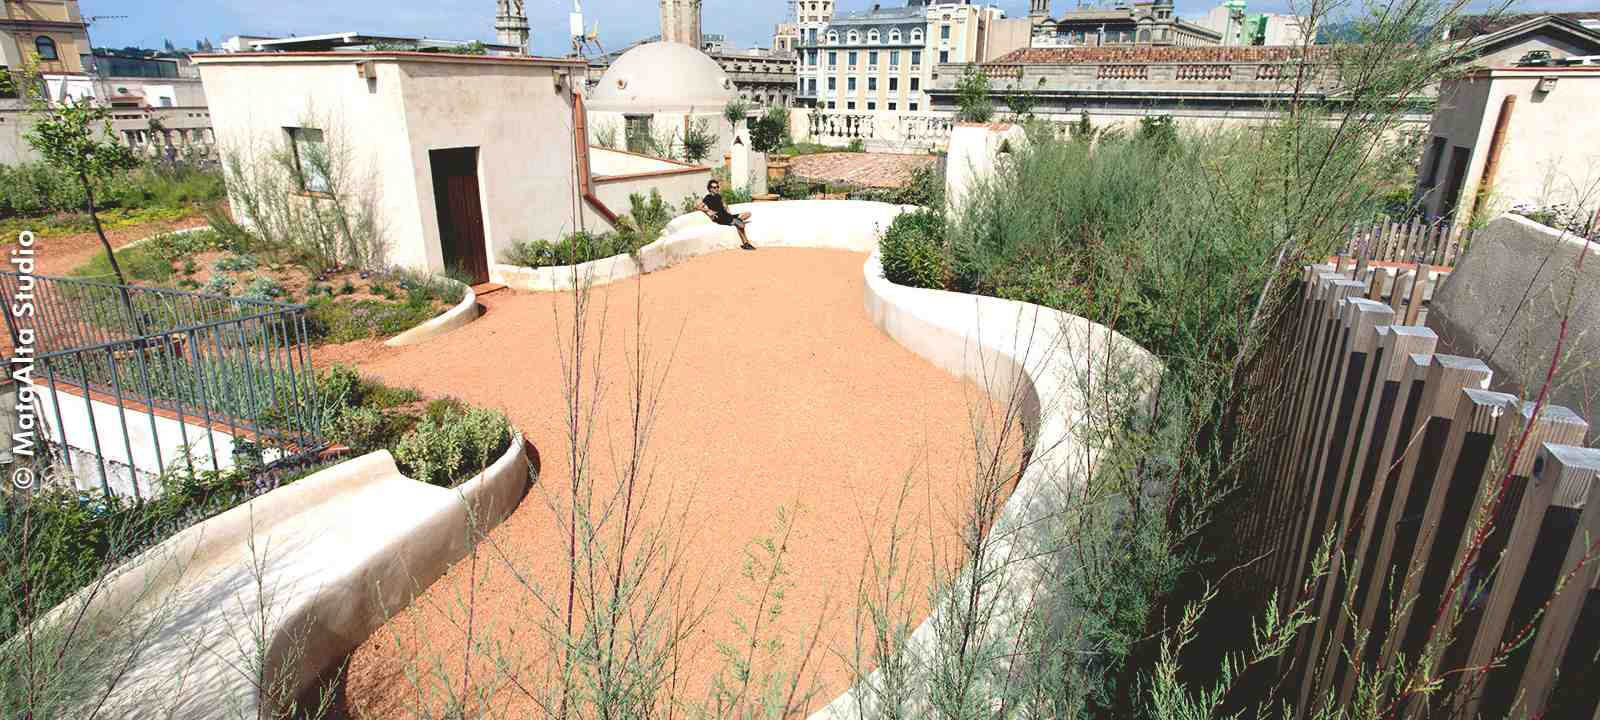 Mediterraner Dachgarten in historischer Kulisse